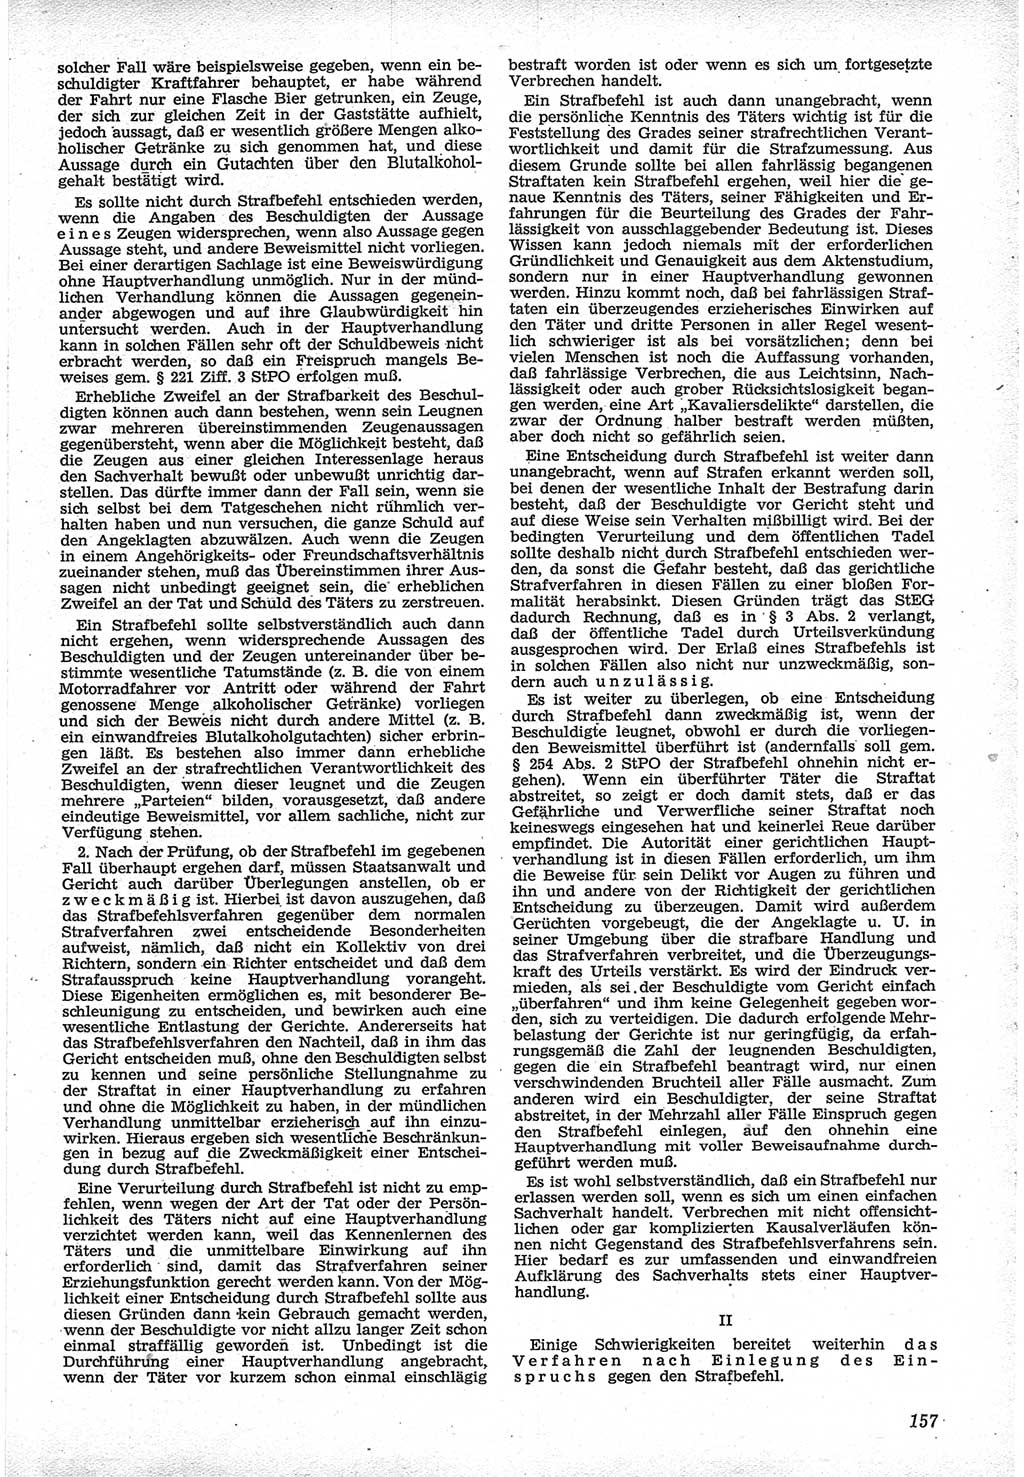 Neue Justiz (NJ), Zeitschrift für Recht und Rechtswissenschaft [Deutsche Demokratische Republik (DDR)], 12. Jahrgang 1958, Seite 157 (NJ DDR 1958, S. 157)